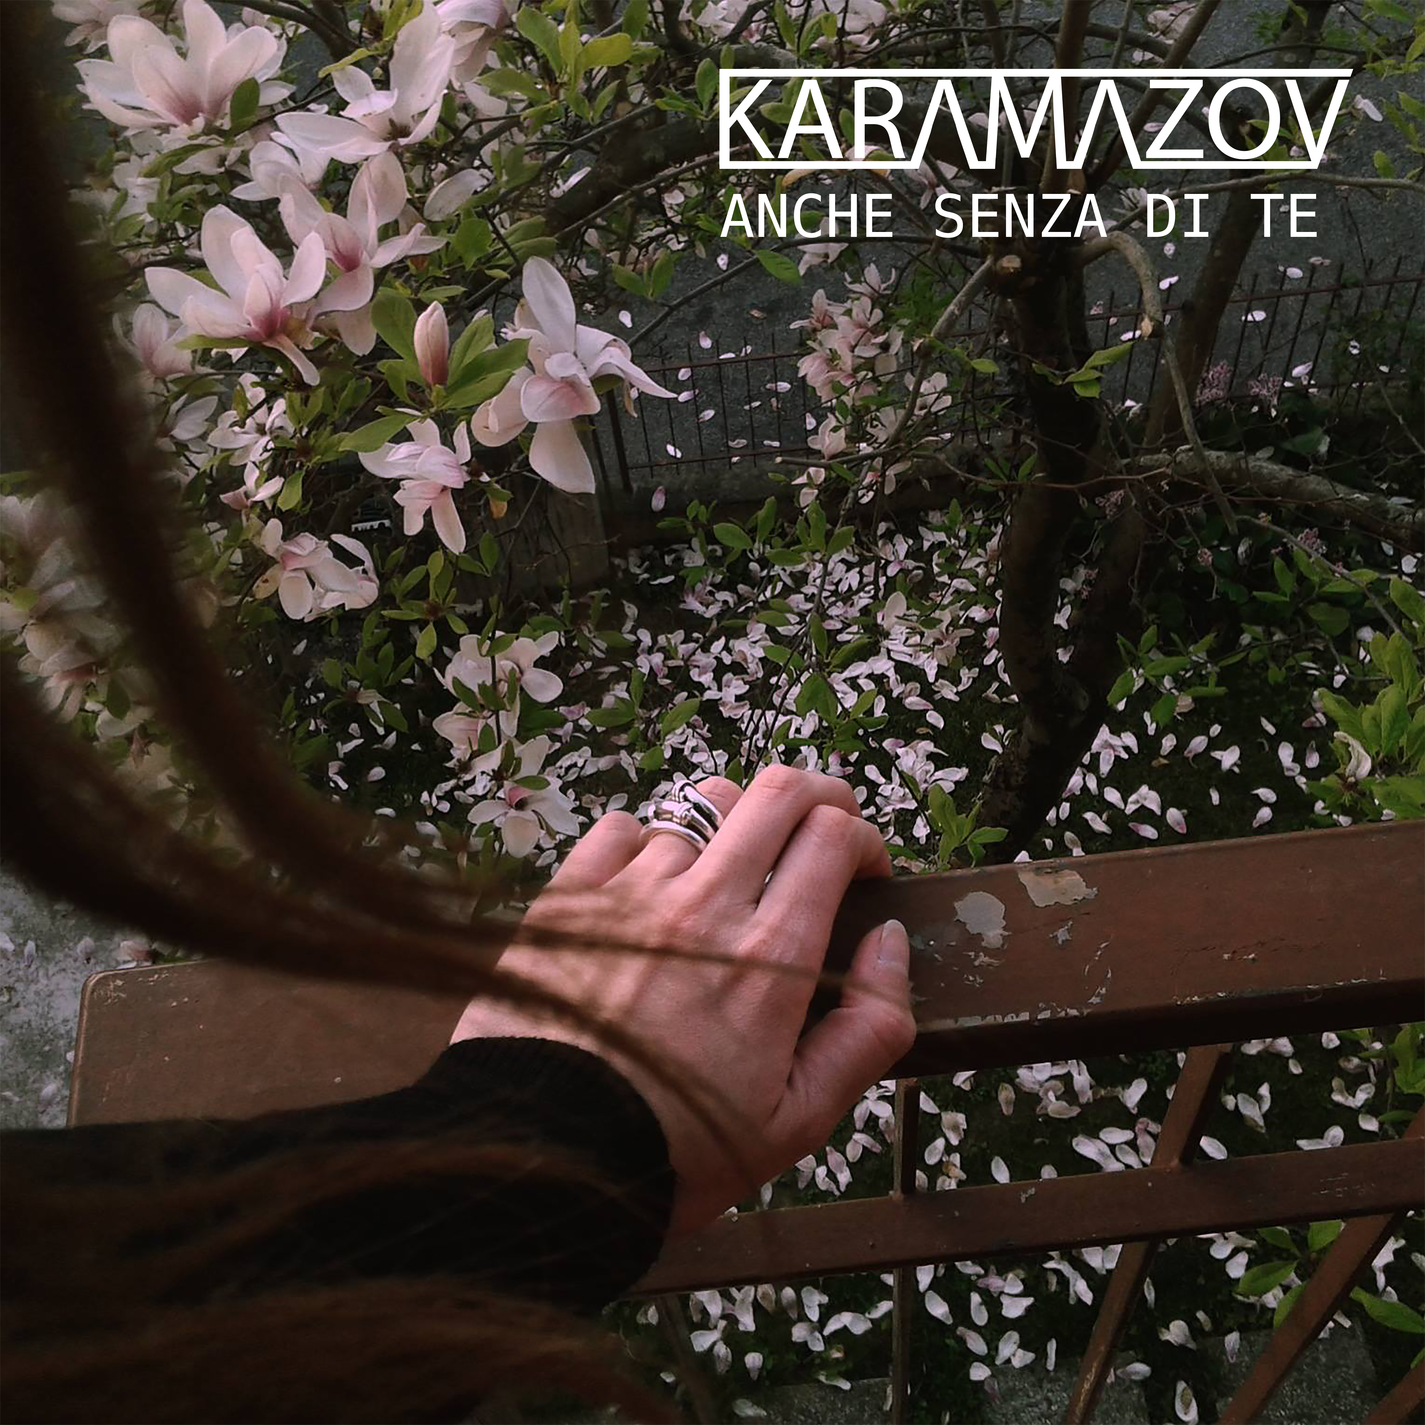 Karamazov: “Anche senza di te”, l’amore nei gesti quotidiani